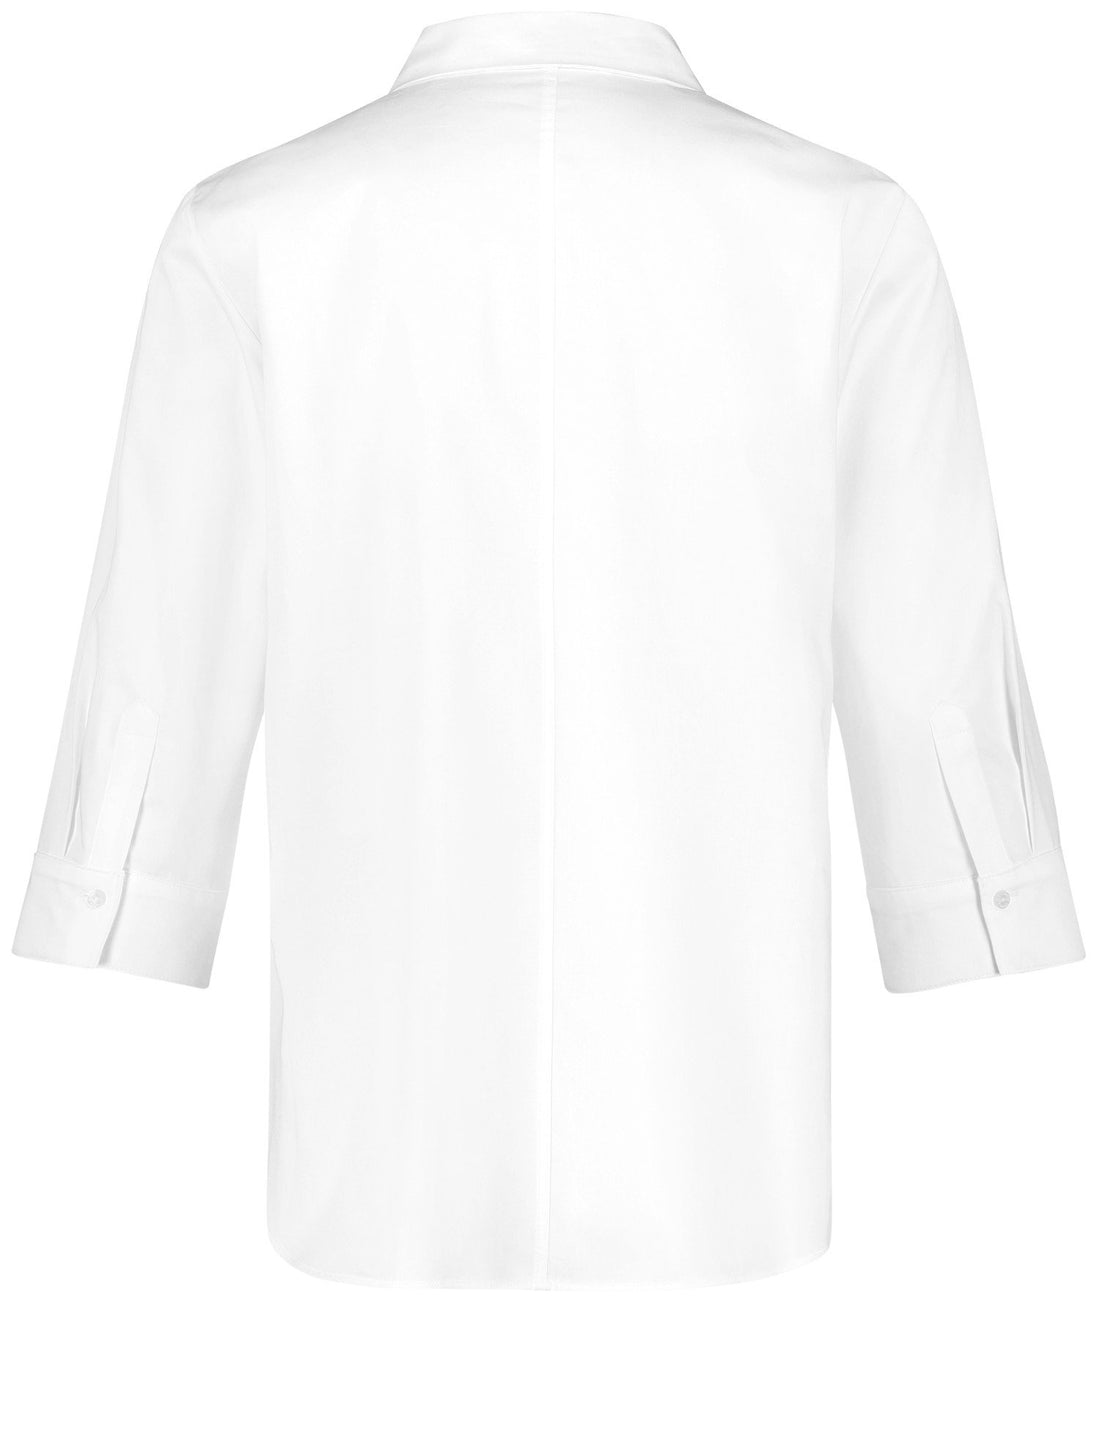 White 3-4 Sleeve Button Down Shirt _160065-66401_99600_02